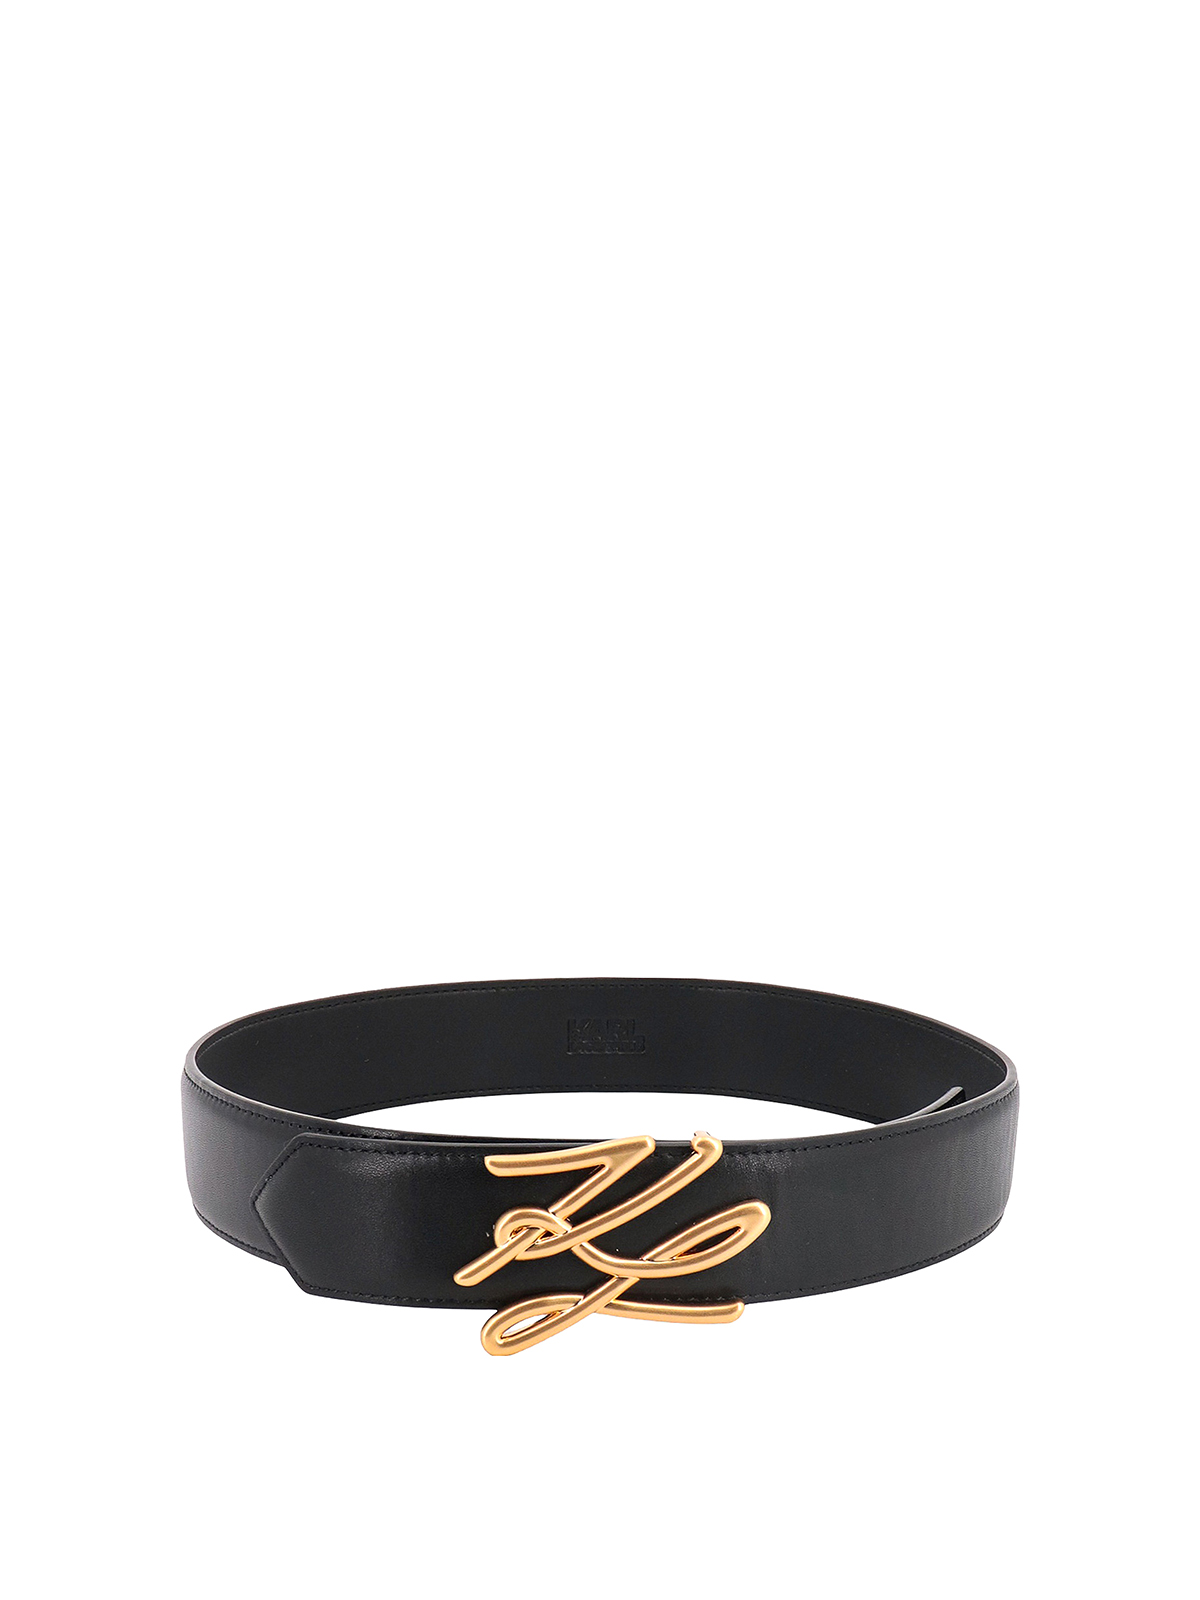 Belts Karl Lagerfeld - Belt - 231W3102999 | Shop online at iKRIX